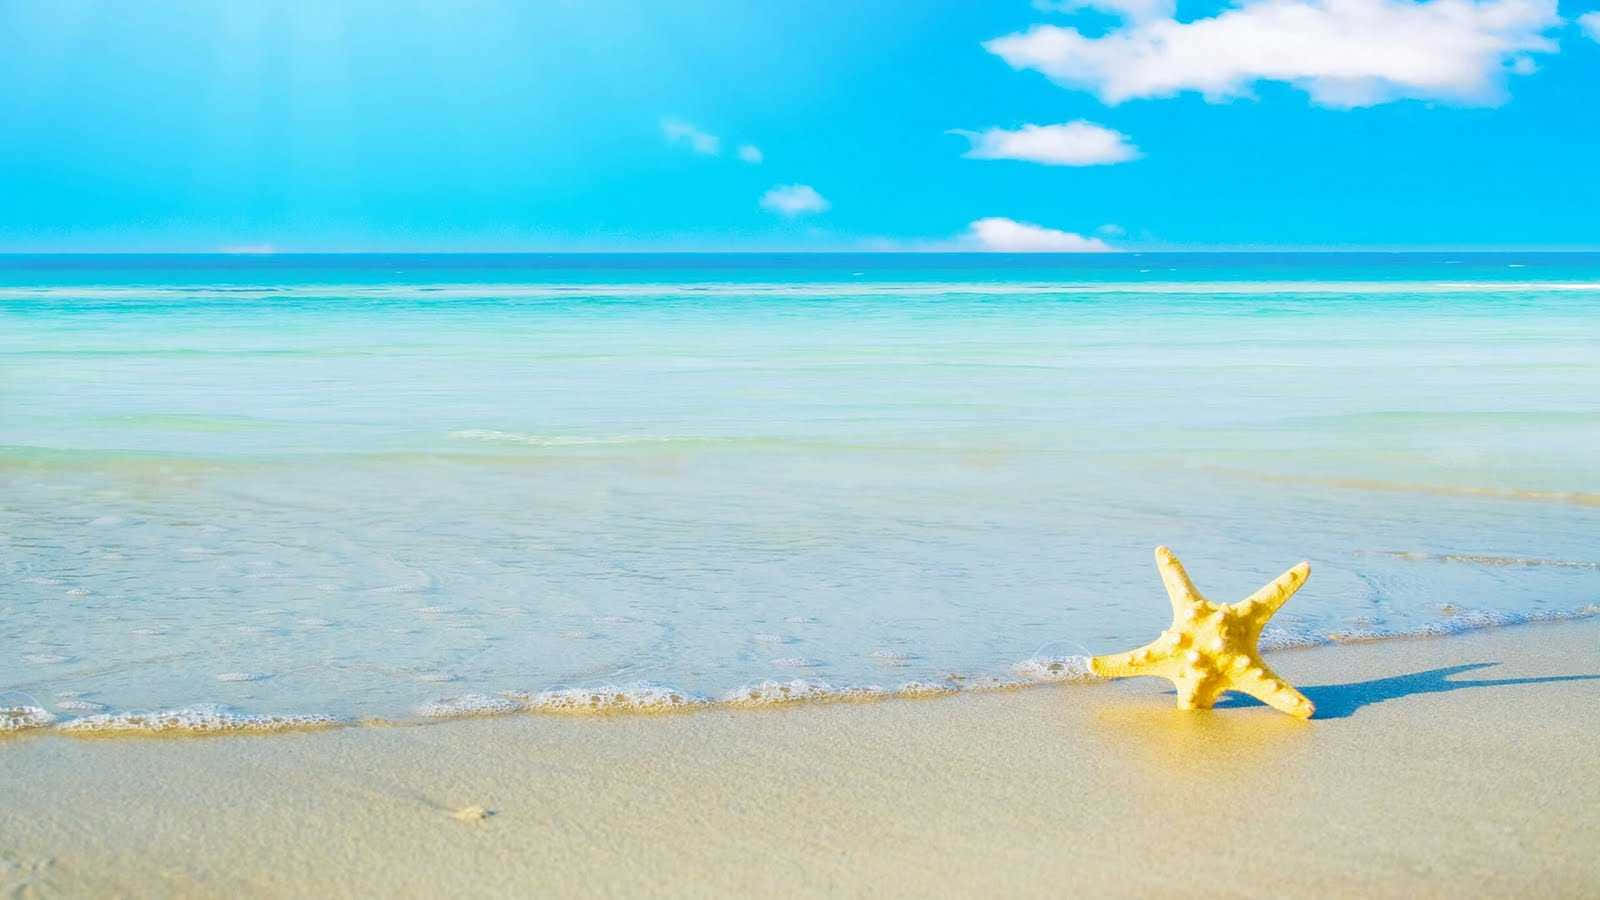 Imágenesestéticas De Estrellas De Mar En La Playa Durante El Verano.